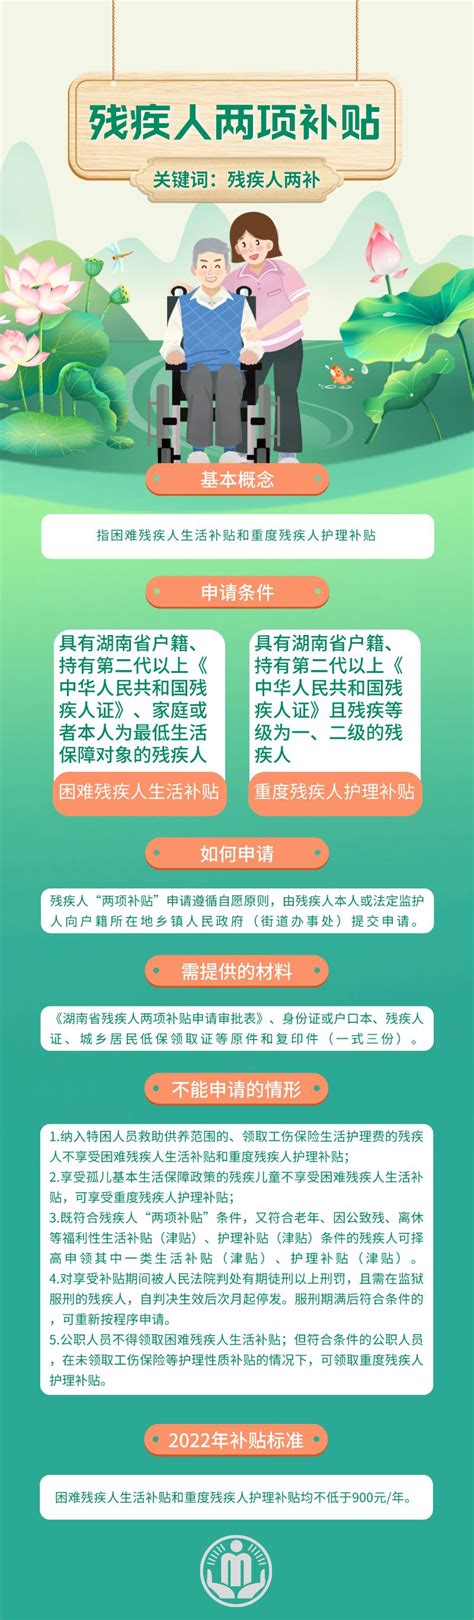 涨了！湖南省残疾人“两项补贴”省级指导标准提高到每人每月80元 - 民政要闻 - 新湖南